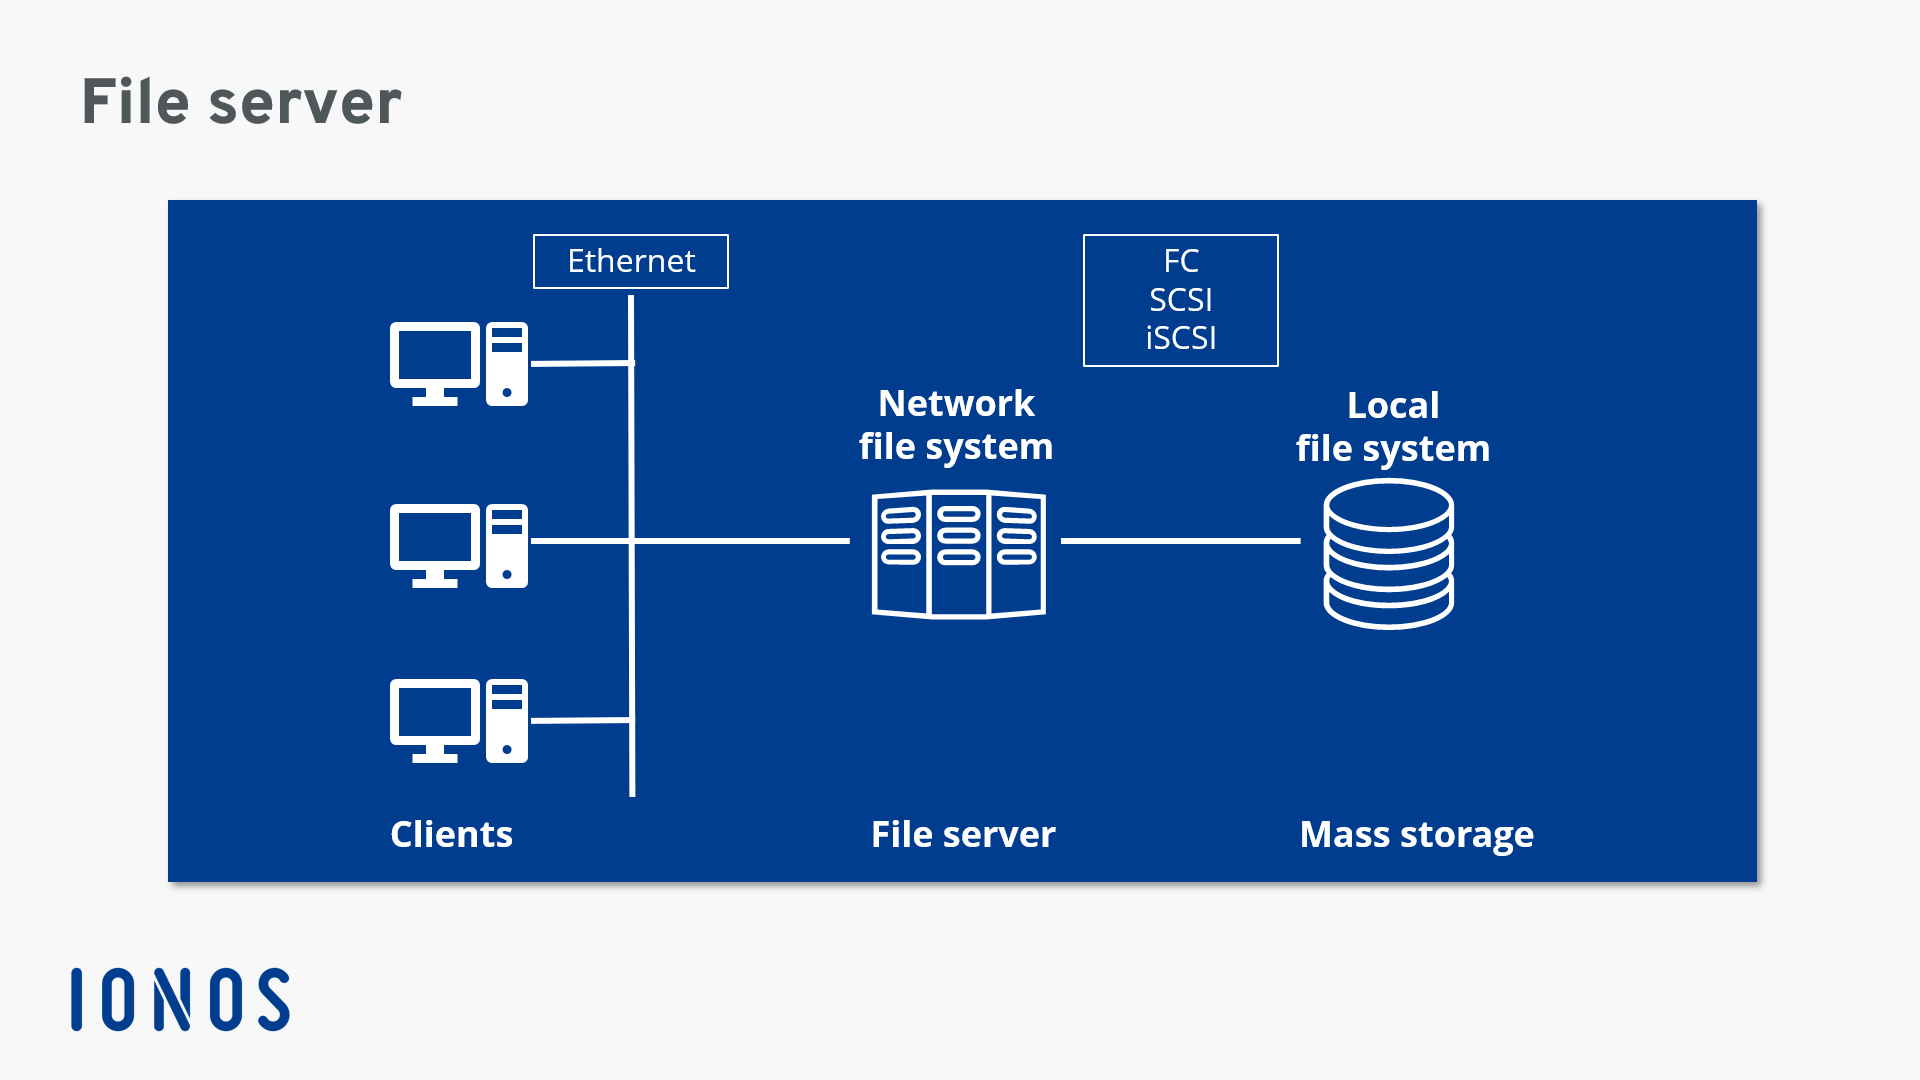 Représentation schématique de la structure du réseau avec un serveur de fichiers